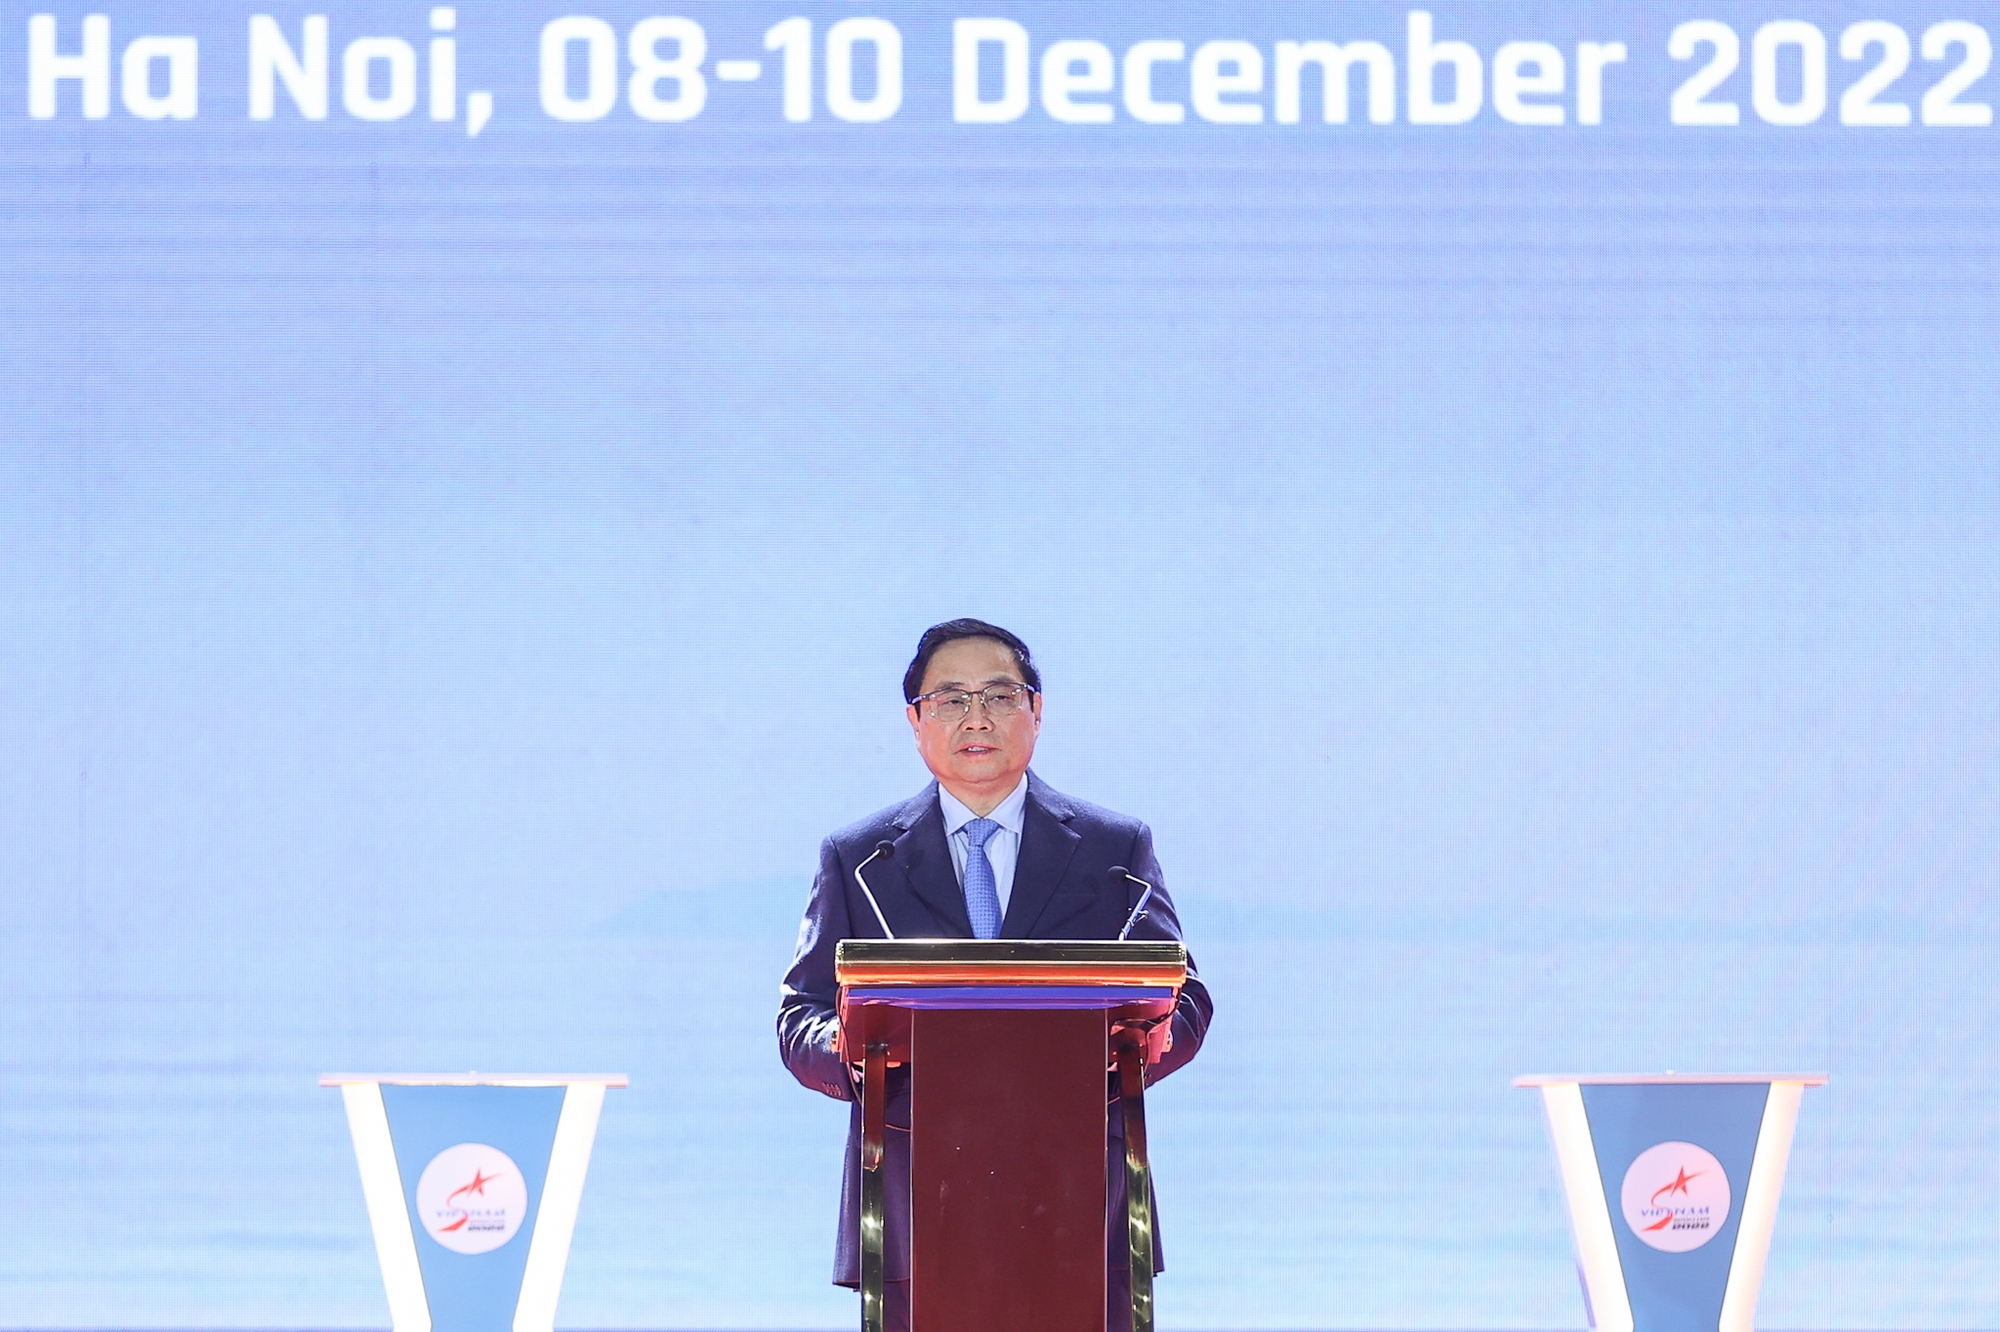 Thủ tướng Phạm Minh Chính: Chính sách quốc phòng của Việt Nam là vì hòa bình, tự vệ, vì nhân dân - Ảnh 3.